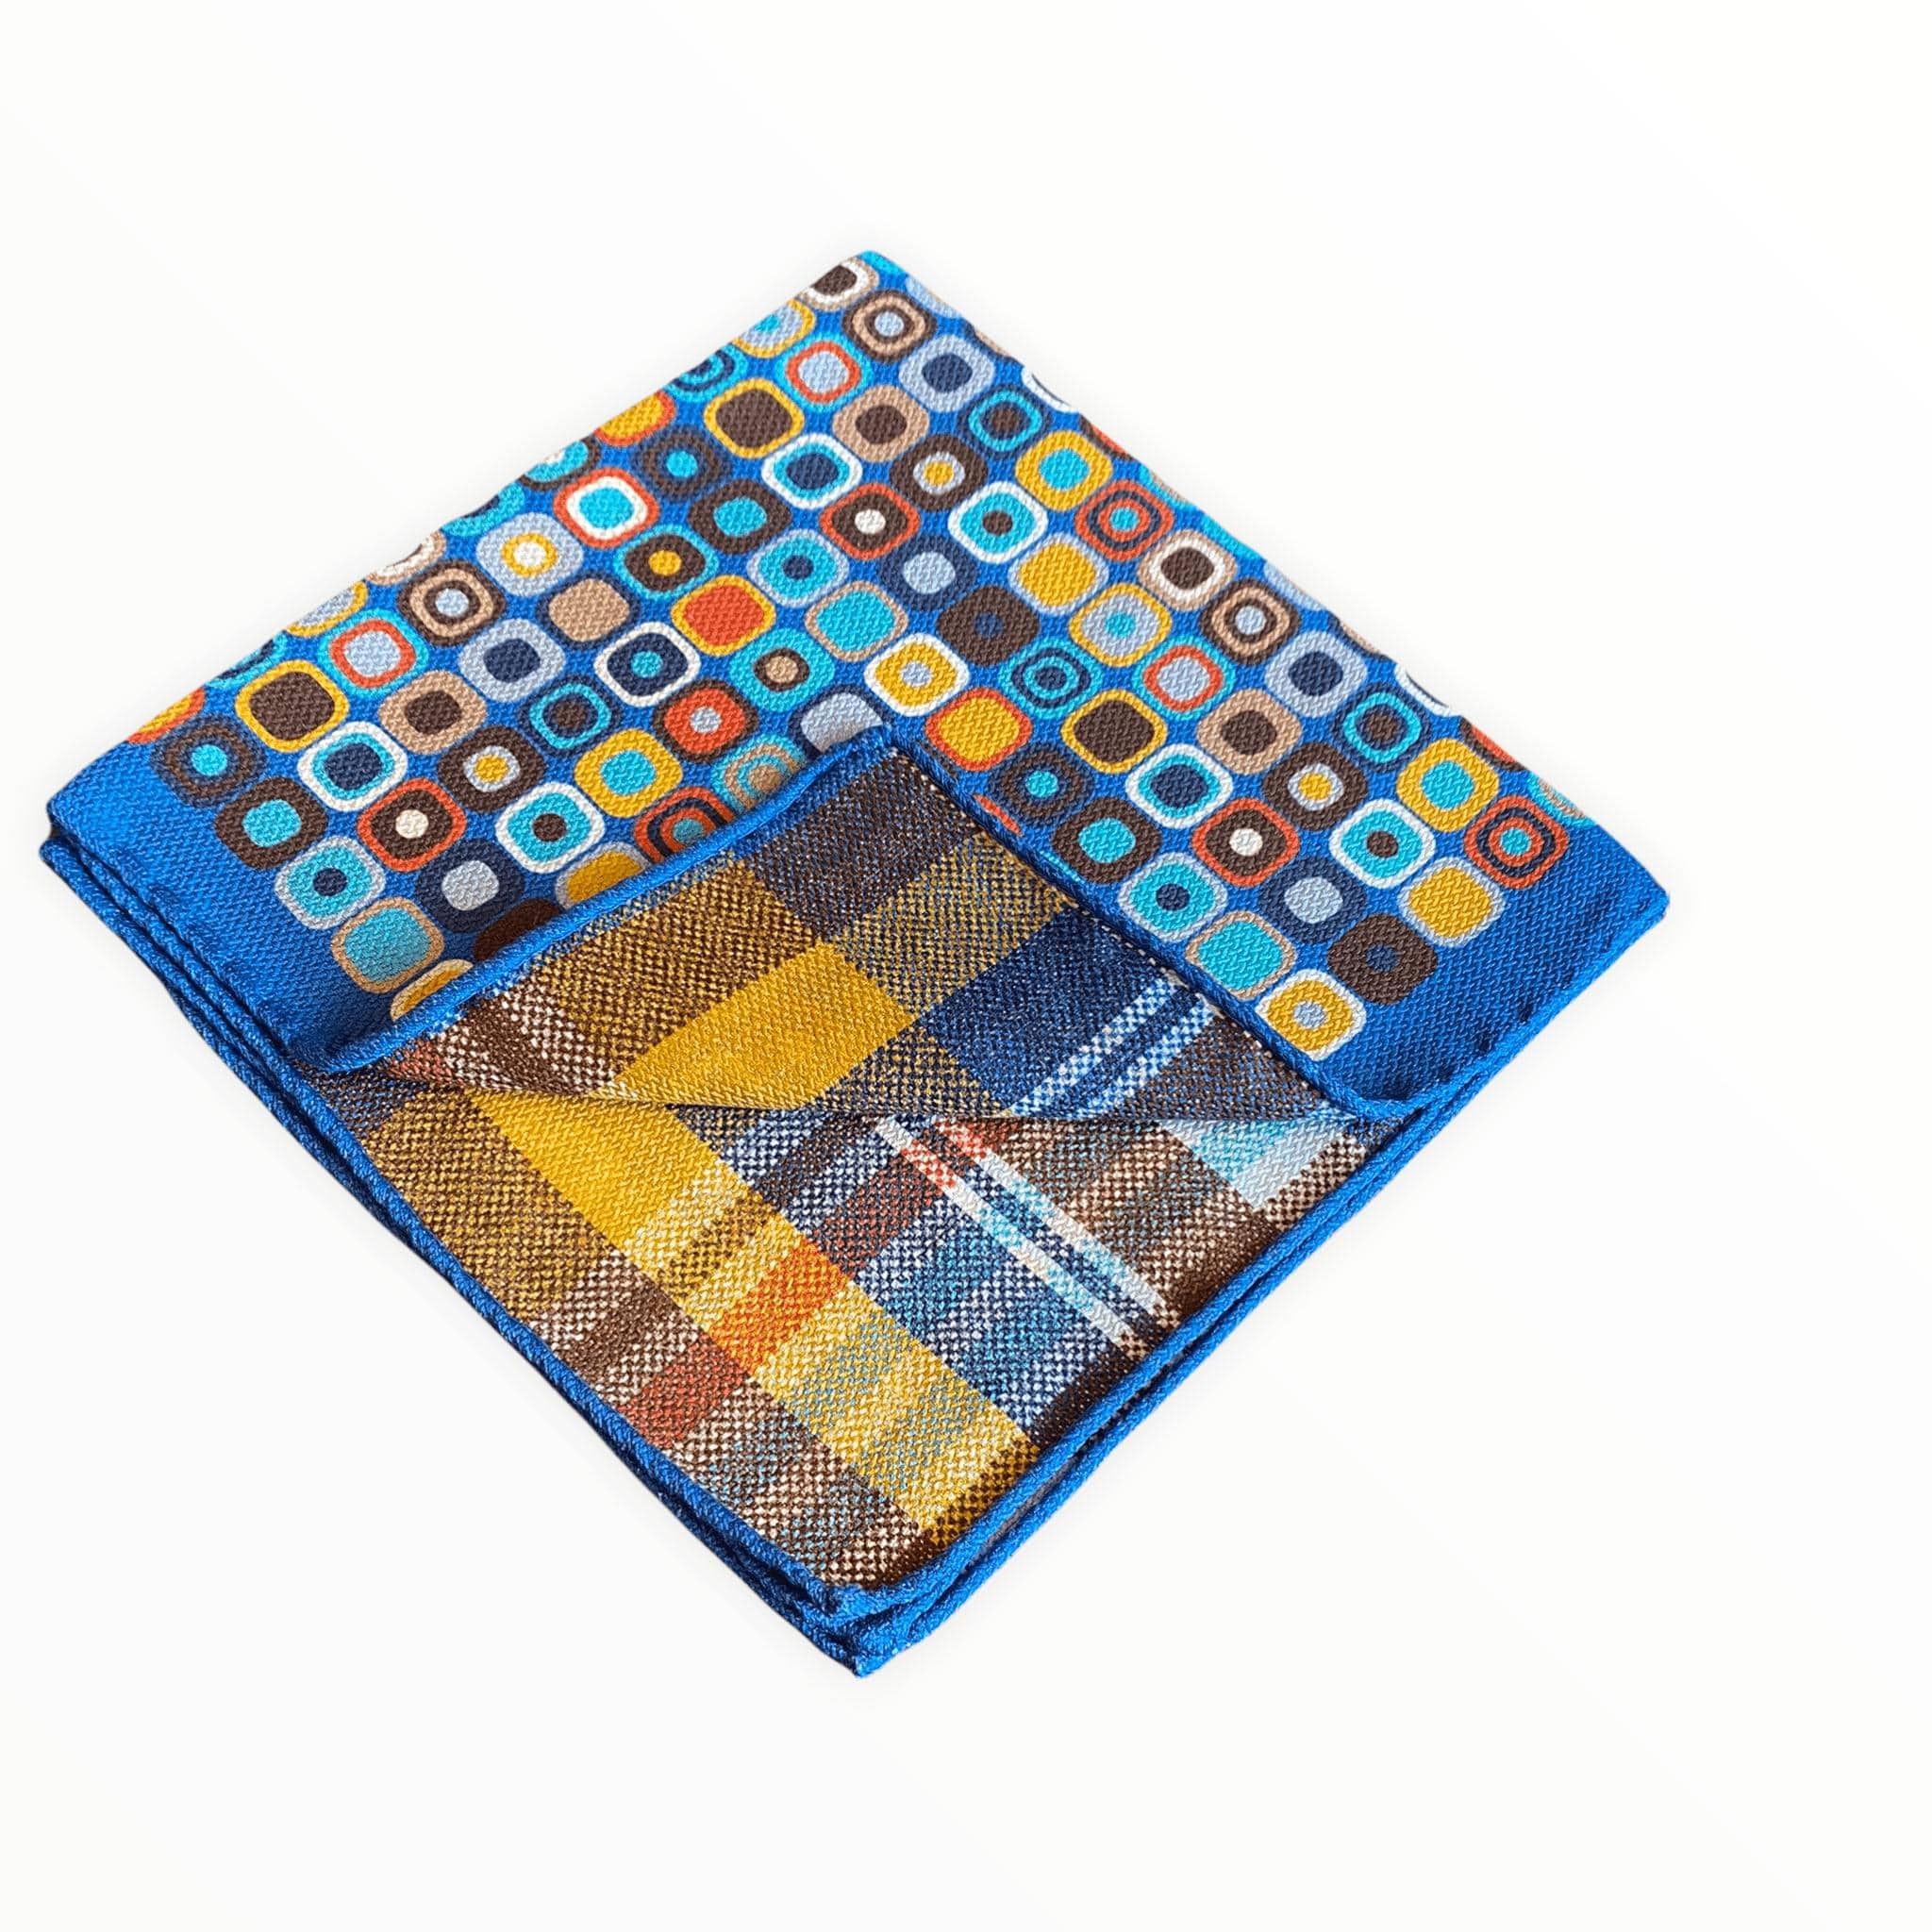 R. Hanauer Men's Pocket Square Blue Tile Plaid